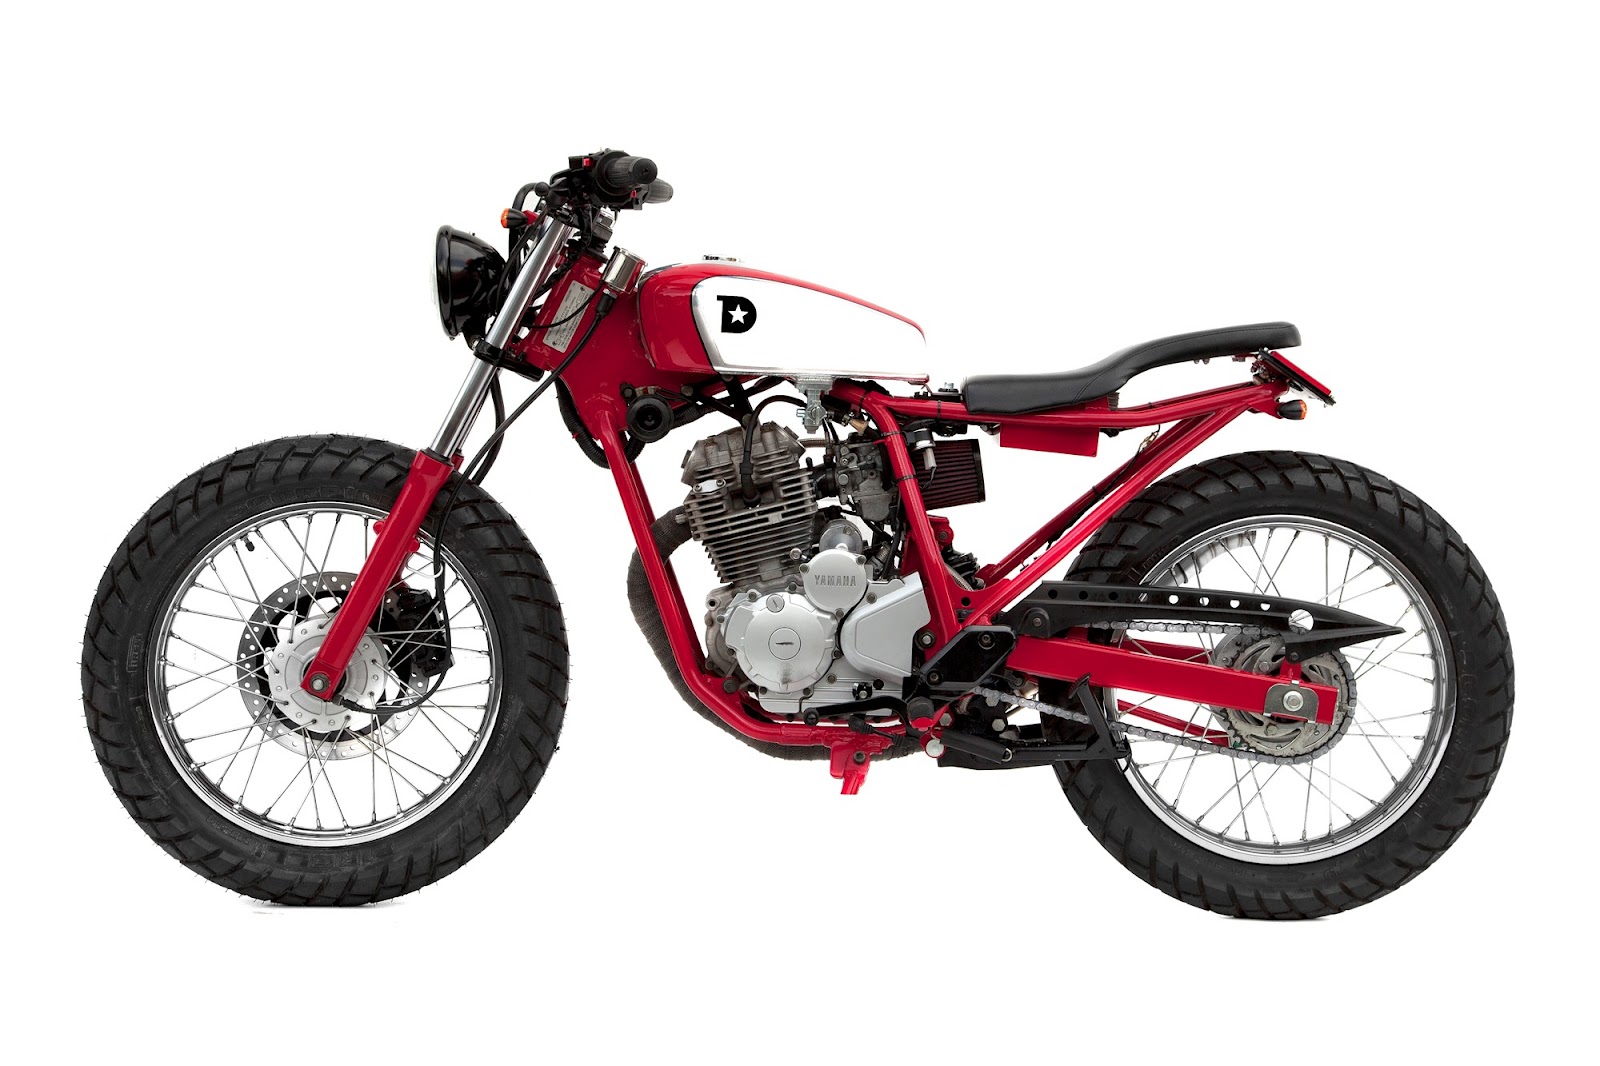 Download Ide Modifikasi Motor Trail Yamaha Scorpio Terbaru Dan